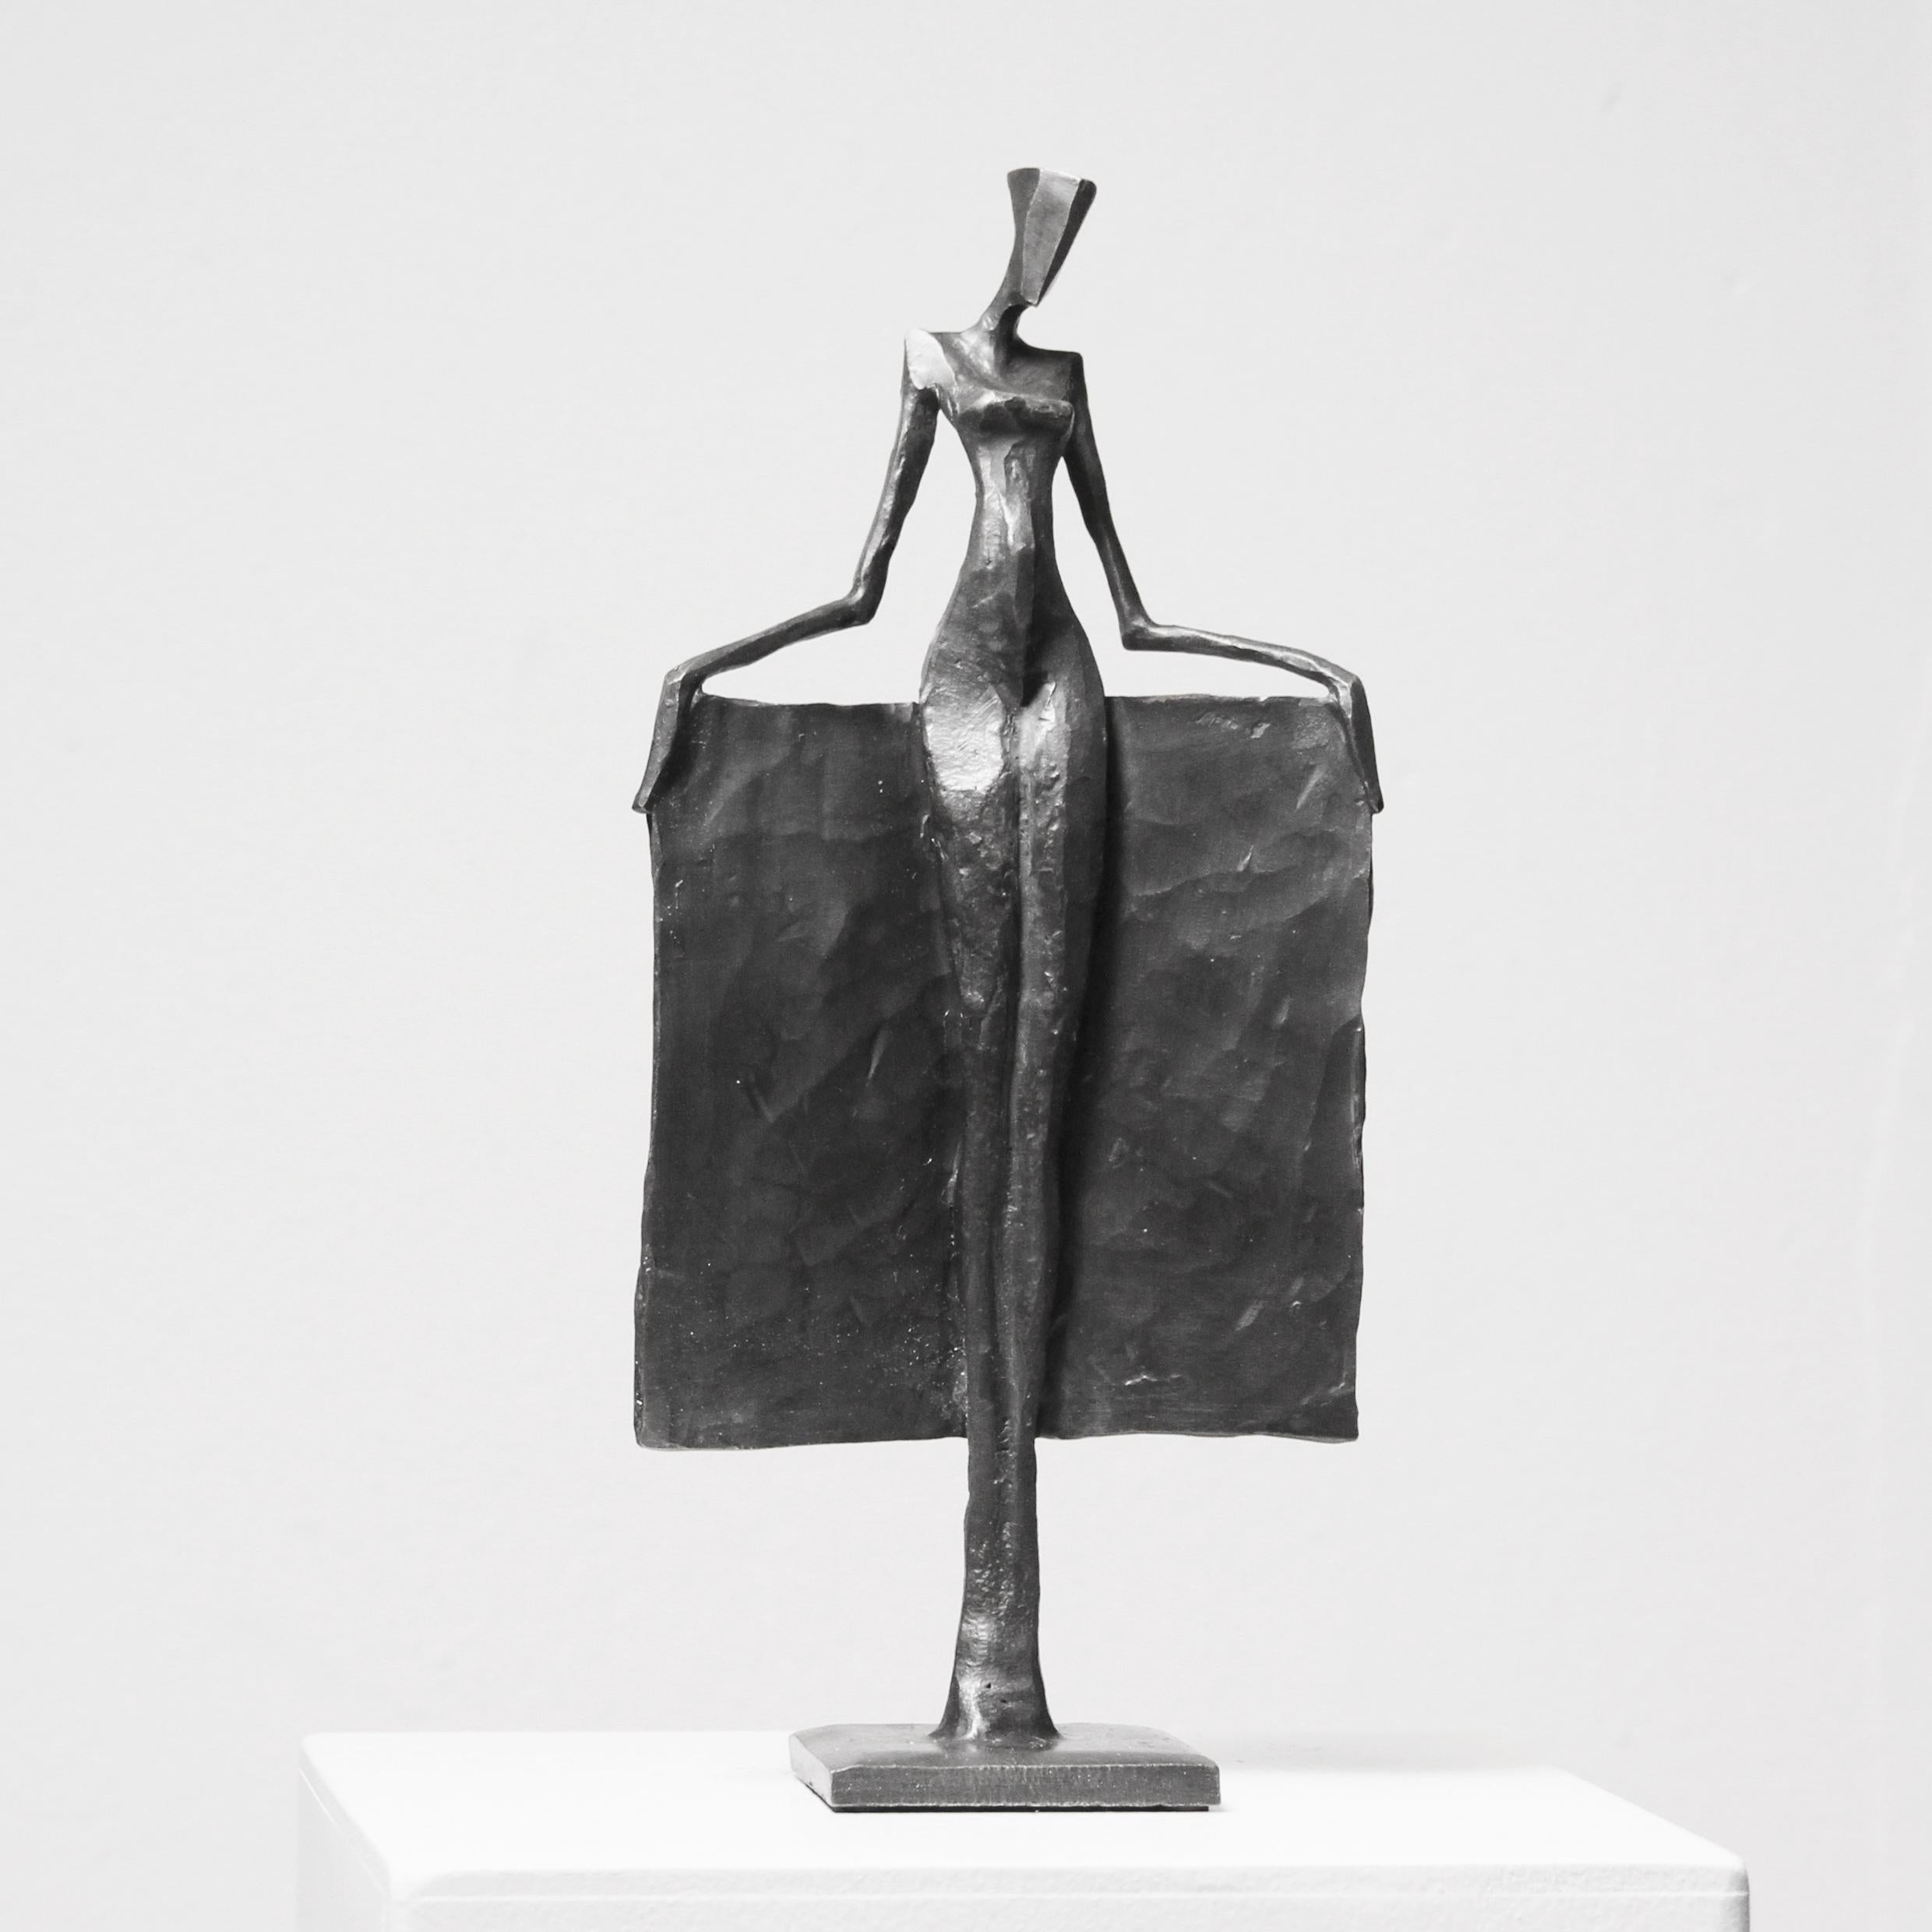 Neile ist eine elegante figurative Bronzeskulptur von Nando Kallweit.

Der stilisierte ägyptisch angehauchte Kopf ist der modernen jugendlichen Haltung nachempfunden, verweist aber auch auf die Bedeutung des Erbes. Ein schönes Stück für sich allein